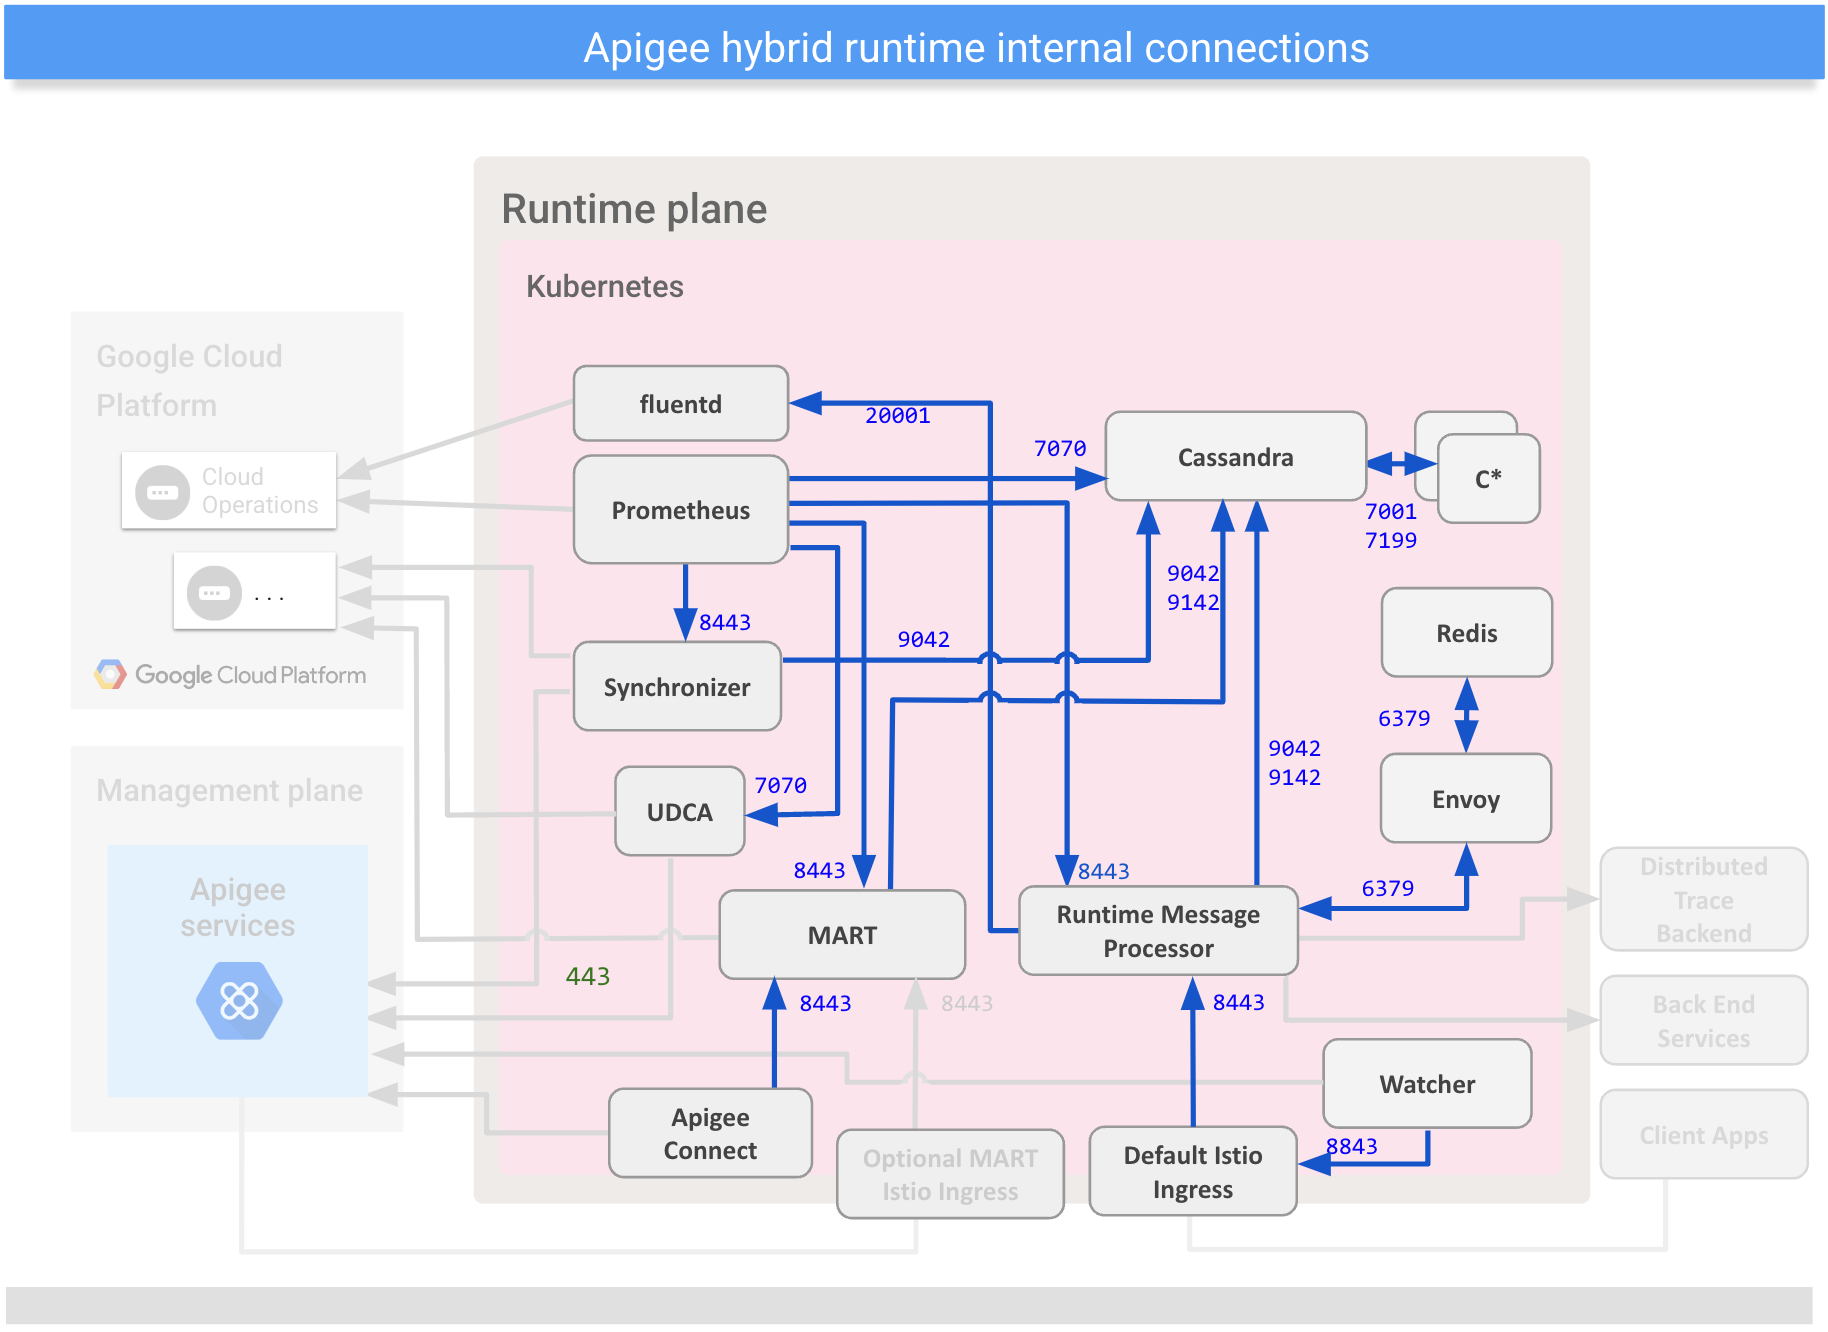 Menampilkan koneksi
antara komponen internal pada bidang runtime hybrid